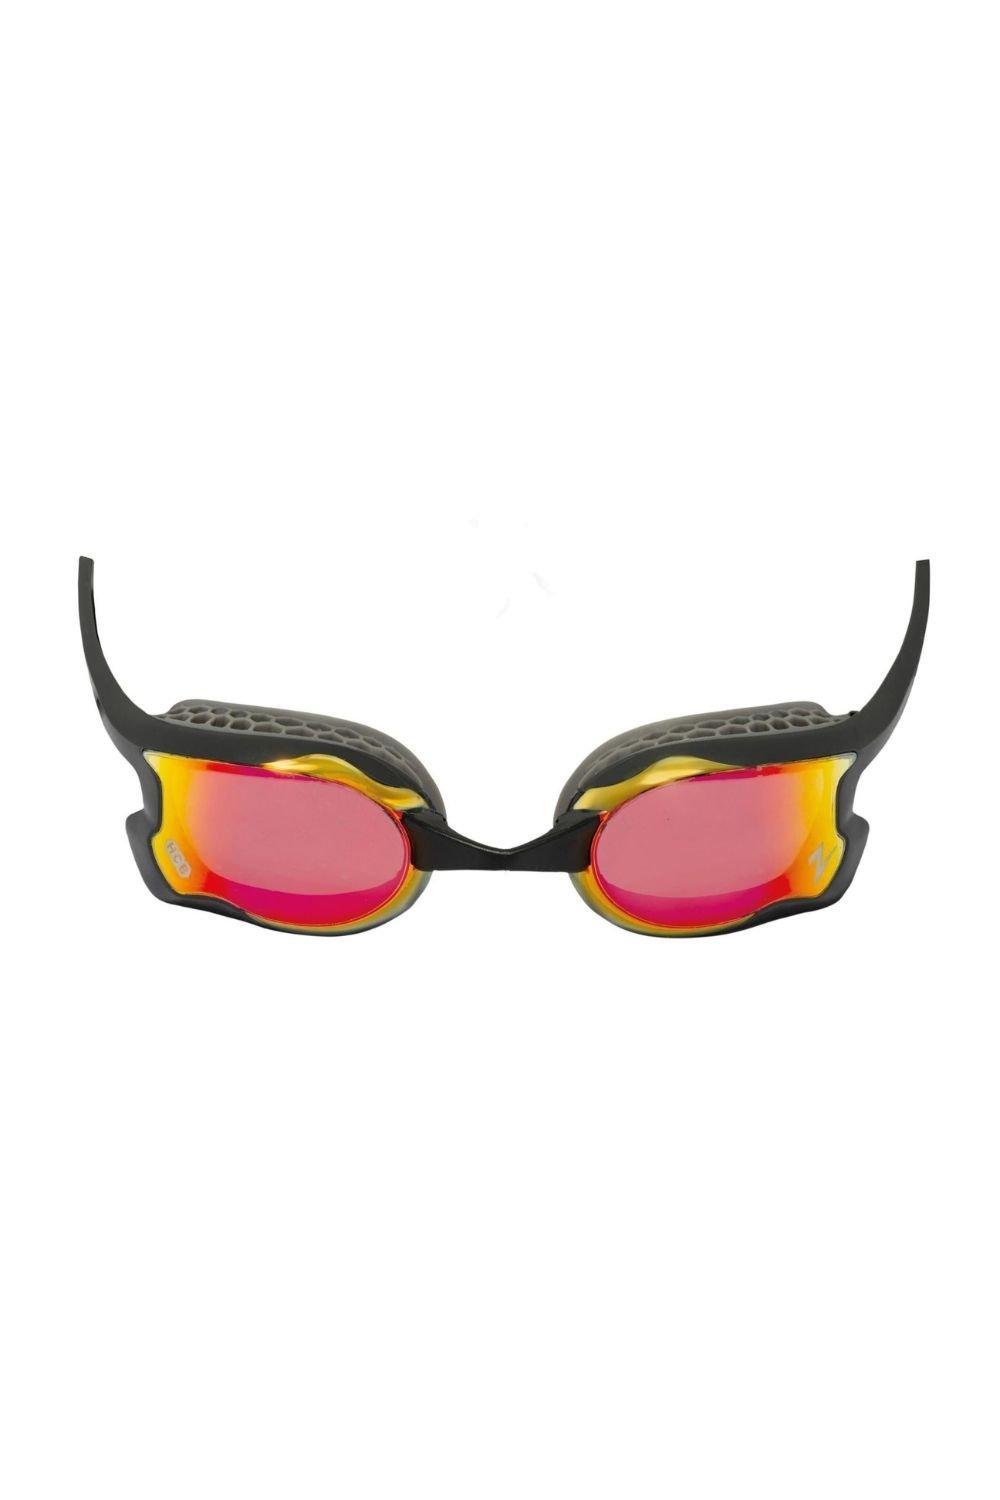 Очки для плавания с зеркалом Raptor HCB Zoggs, красный sailfish swim goggle storm grey очки для плавания